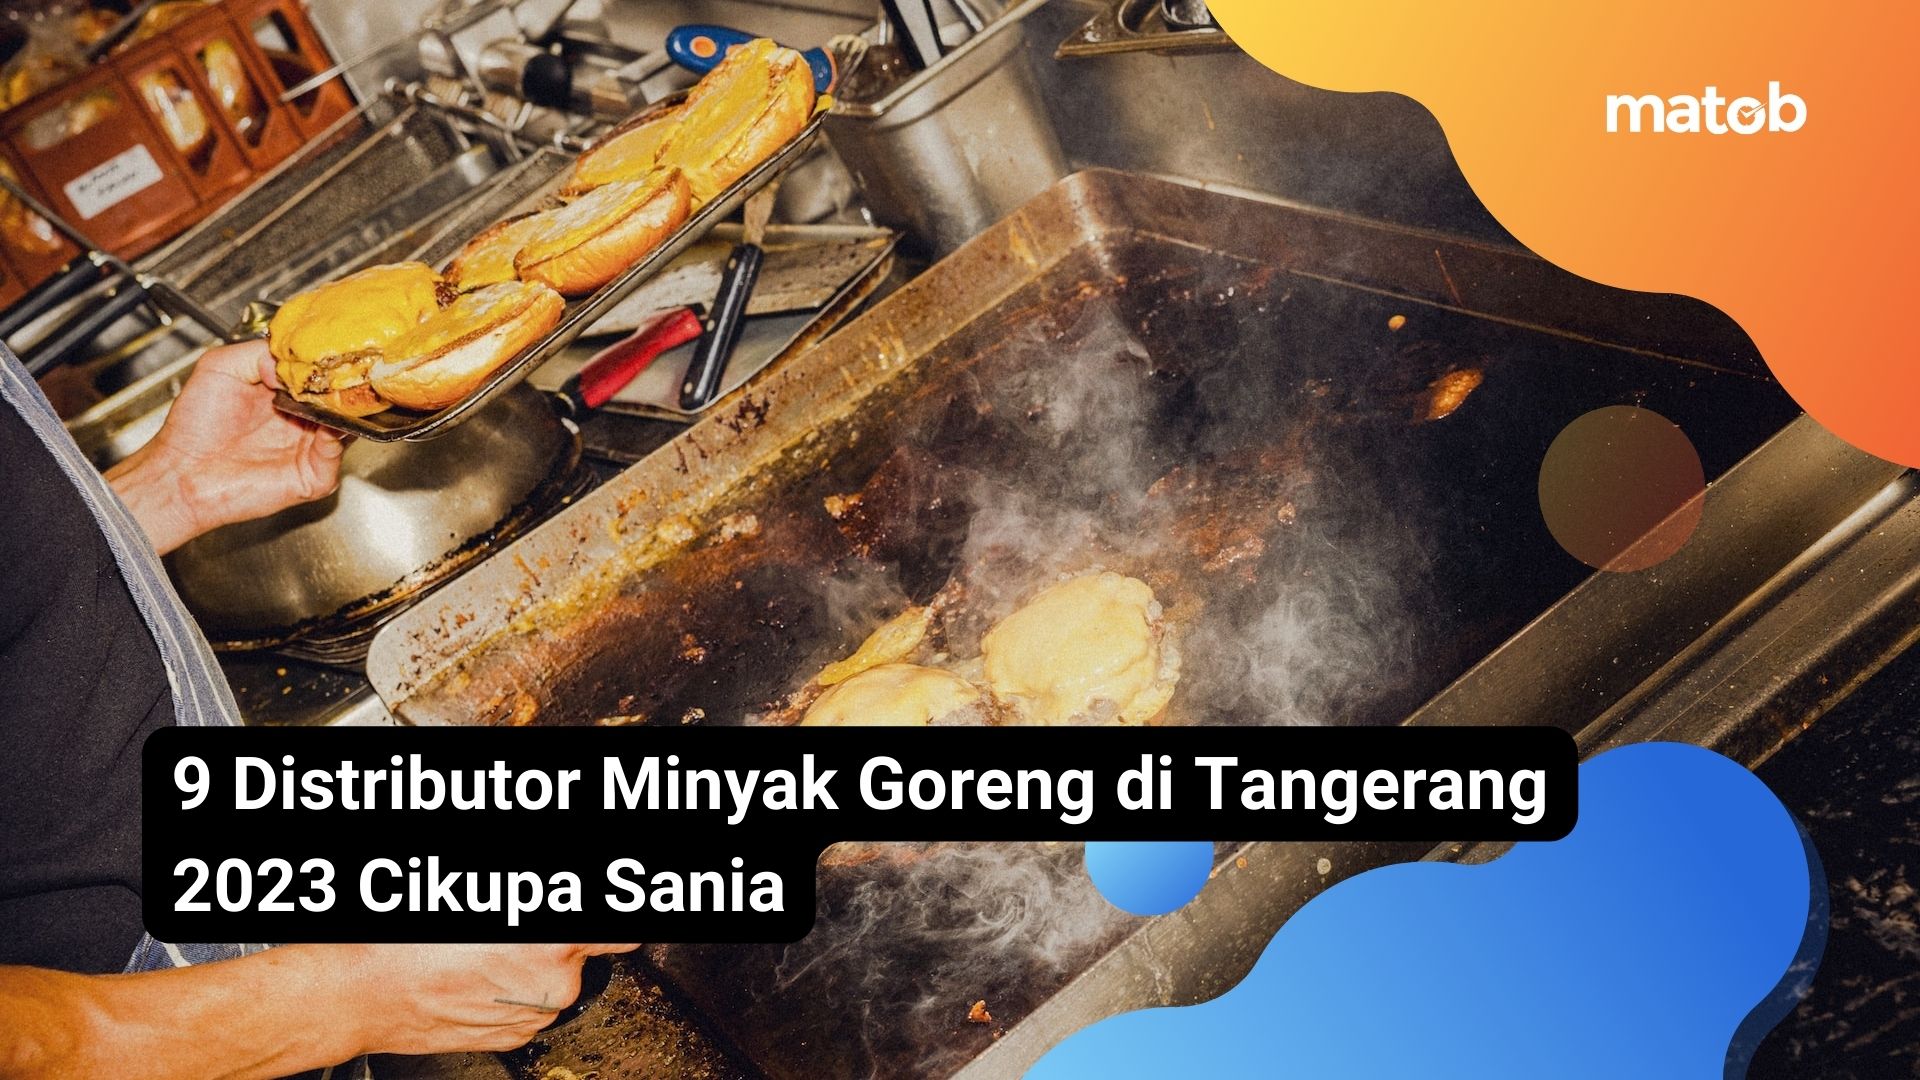 9 Distributor Minyak Goreng di Tangerang 2023 Cikupa Sania